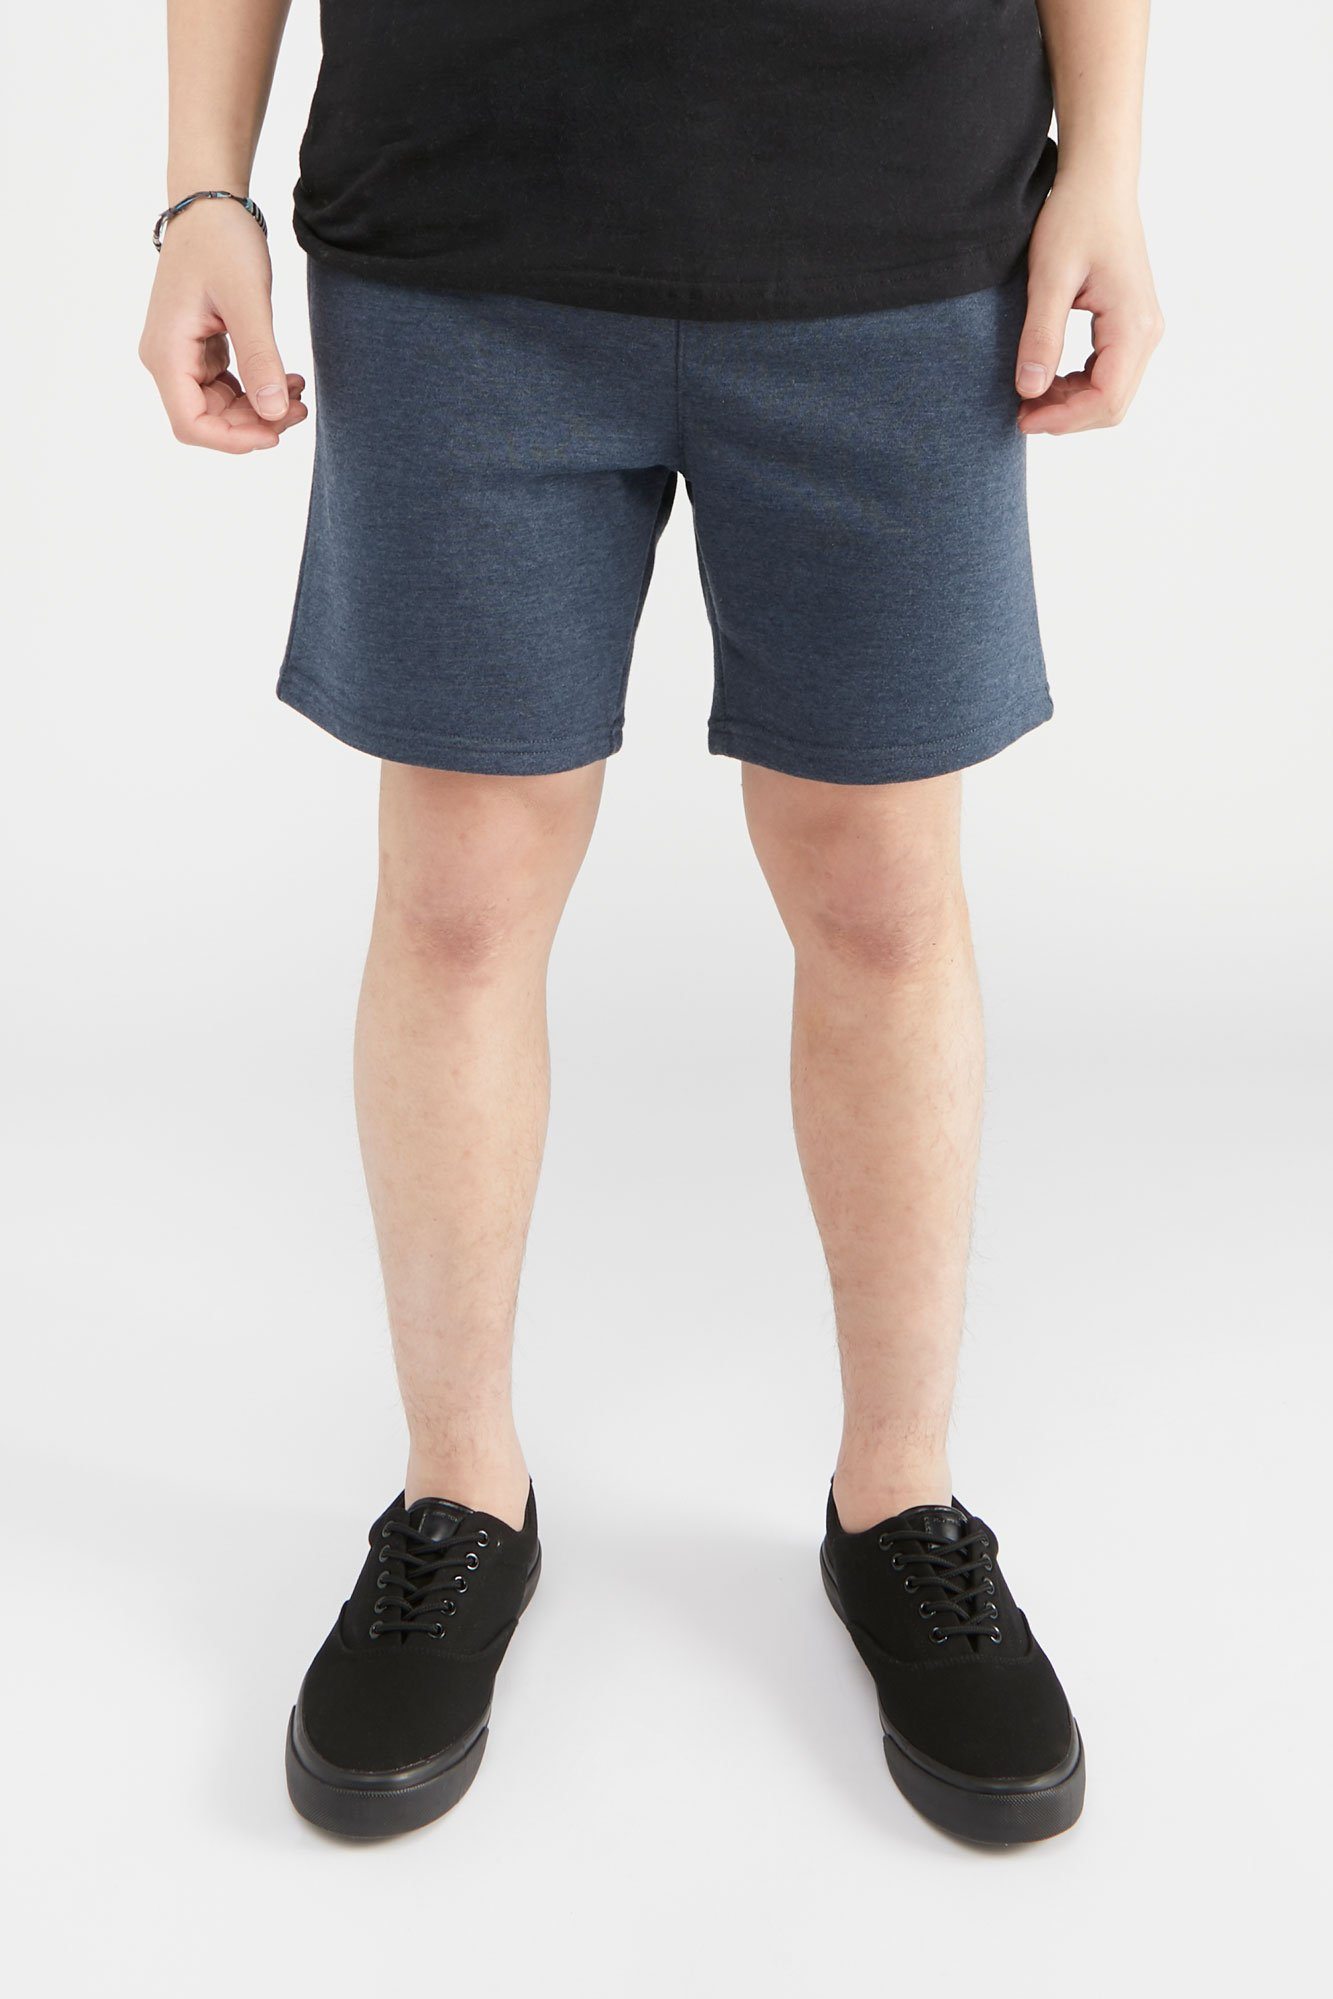 Image of West49 Mens Basic Fleece Shorts